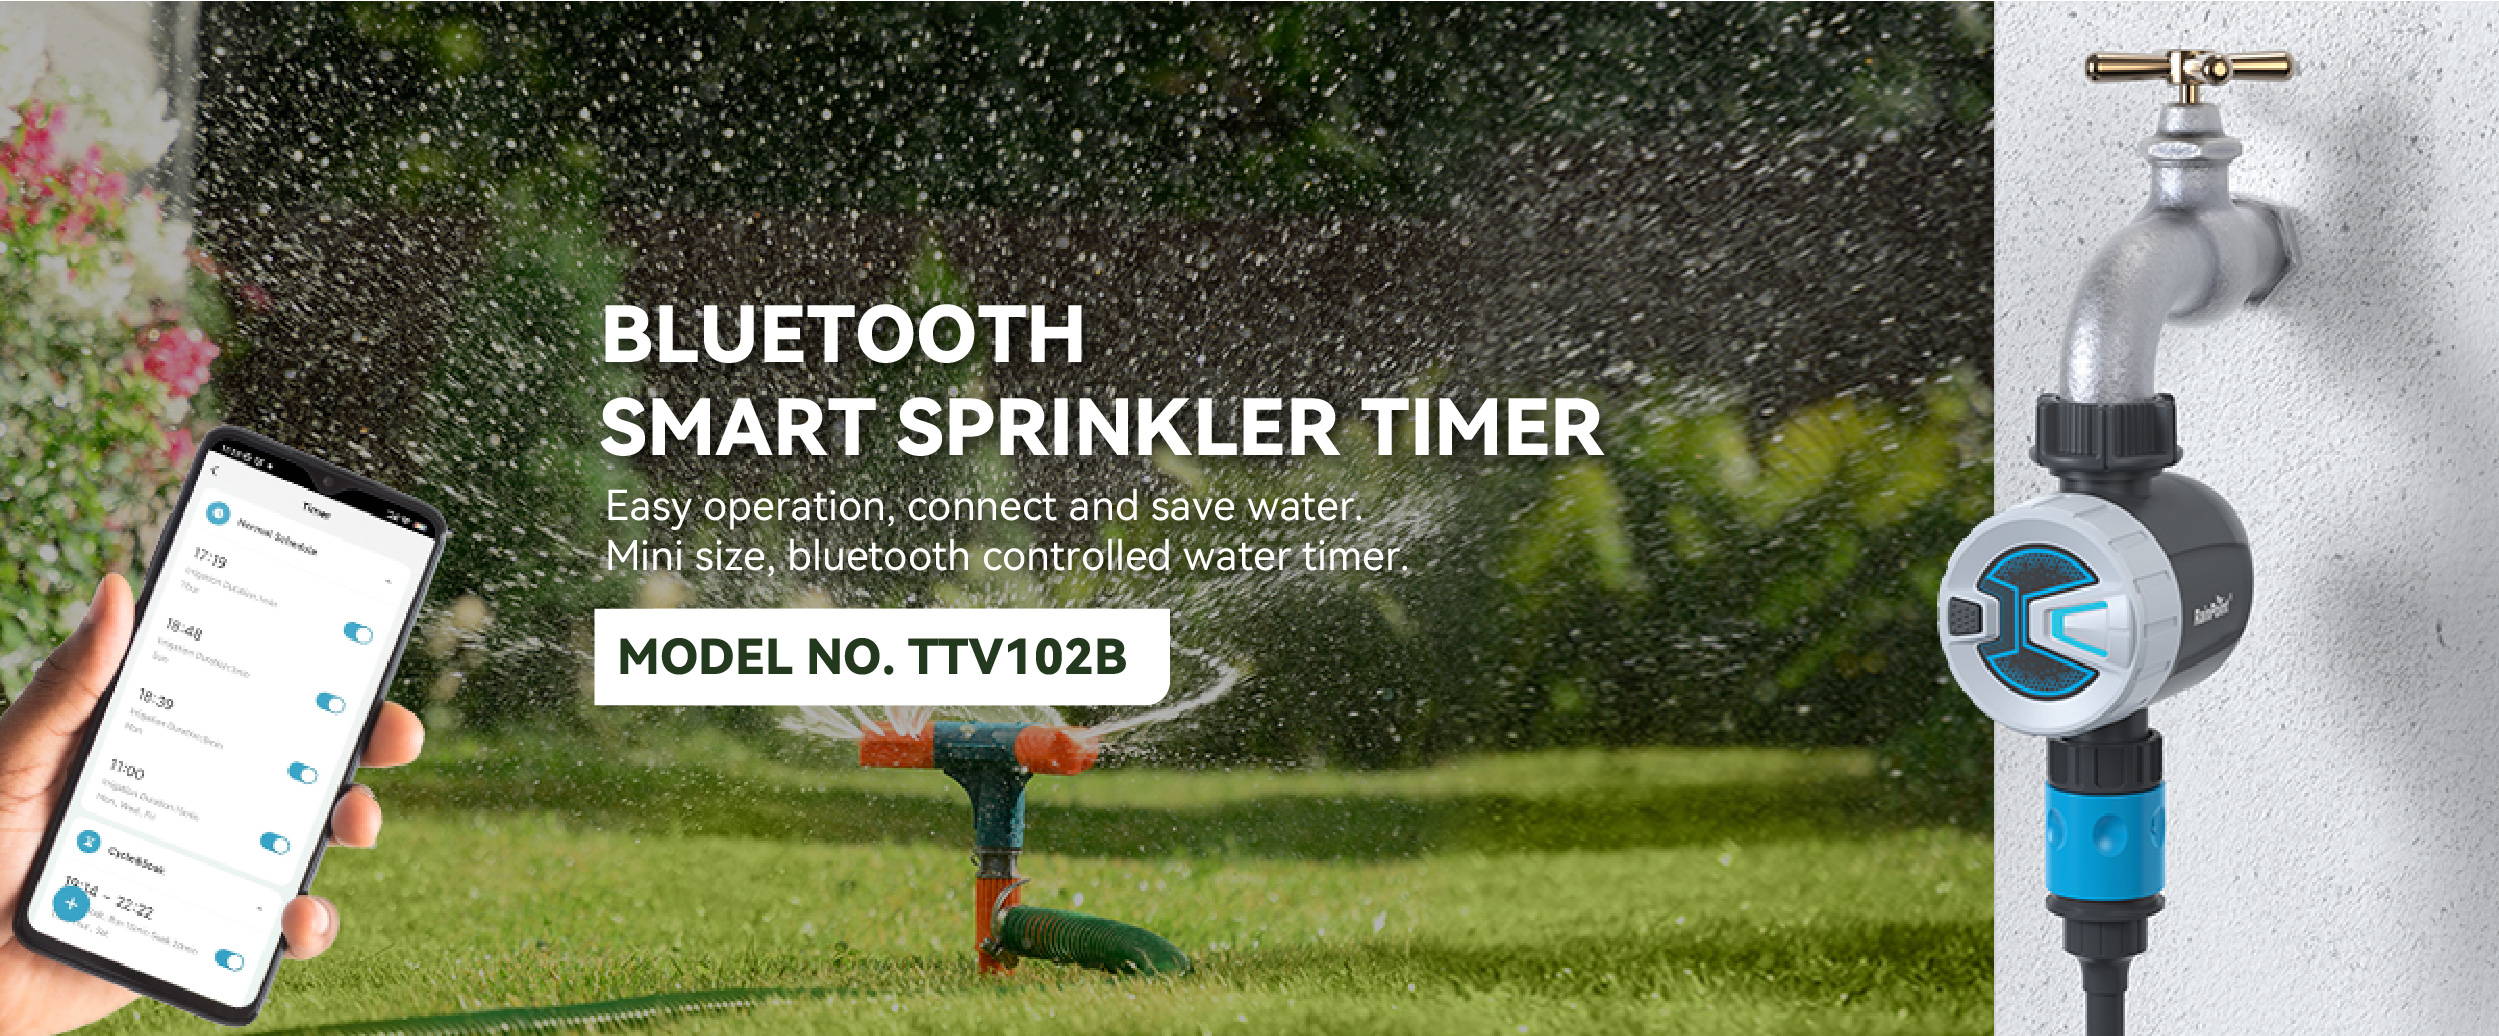 RainPoint TTV102B Bluetooth Smart Sprinkler Timer